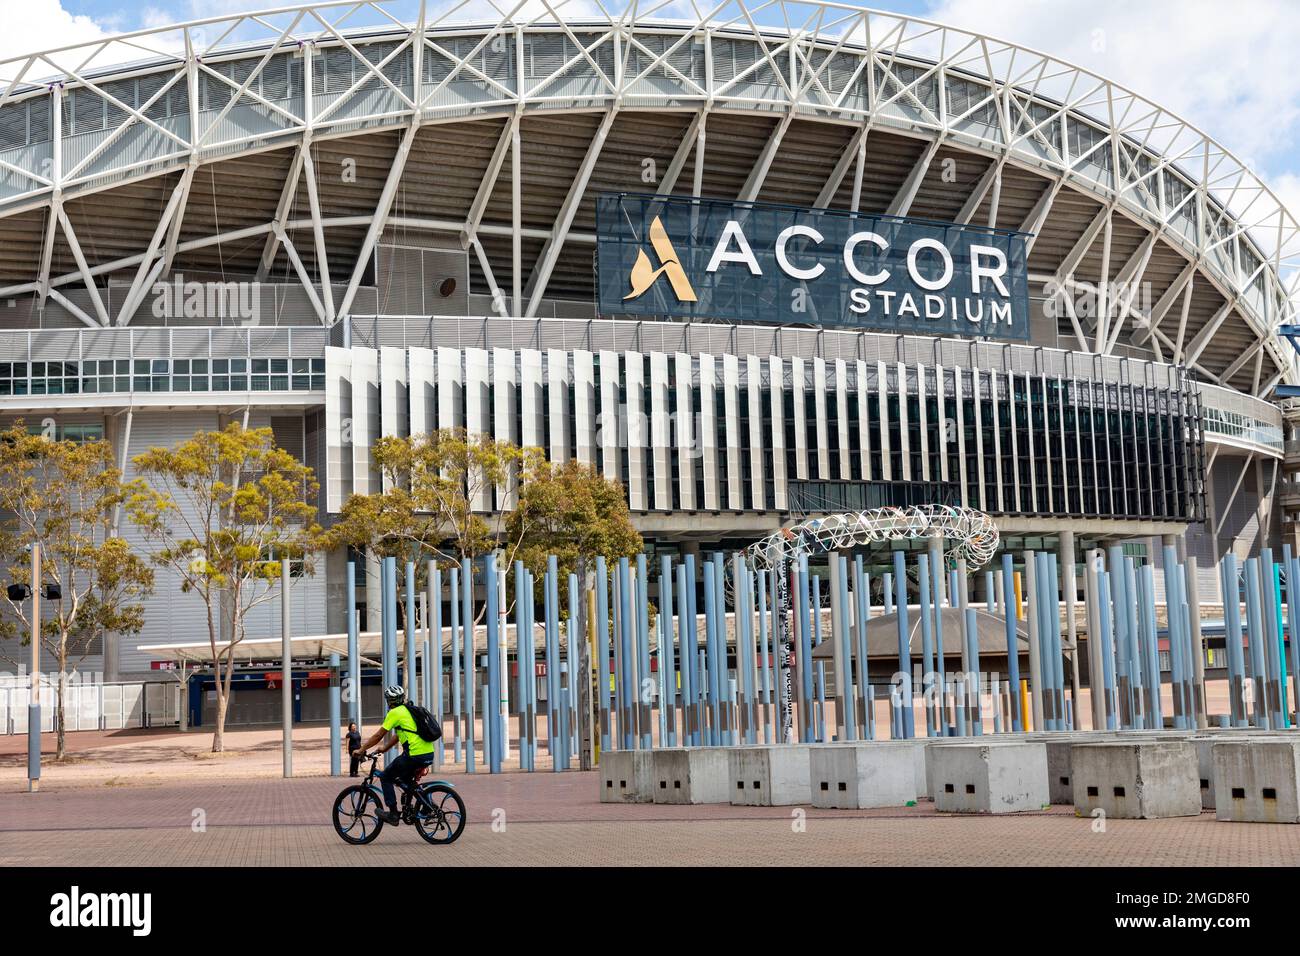 Stadion Australia, Olympiastadion im Sydney Olympic Park, heute bekannt als Accor Stadium, befindet sich im Besitz von NSW Government, Sydney, NSW, Australien Stockfoto